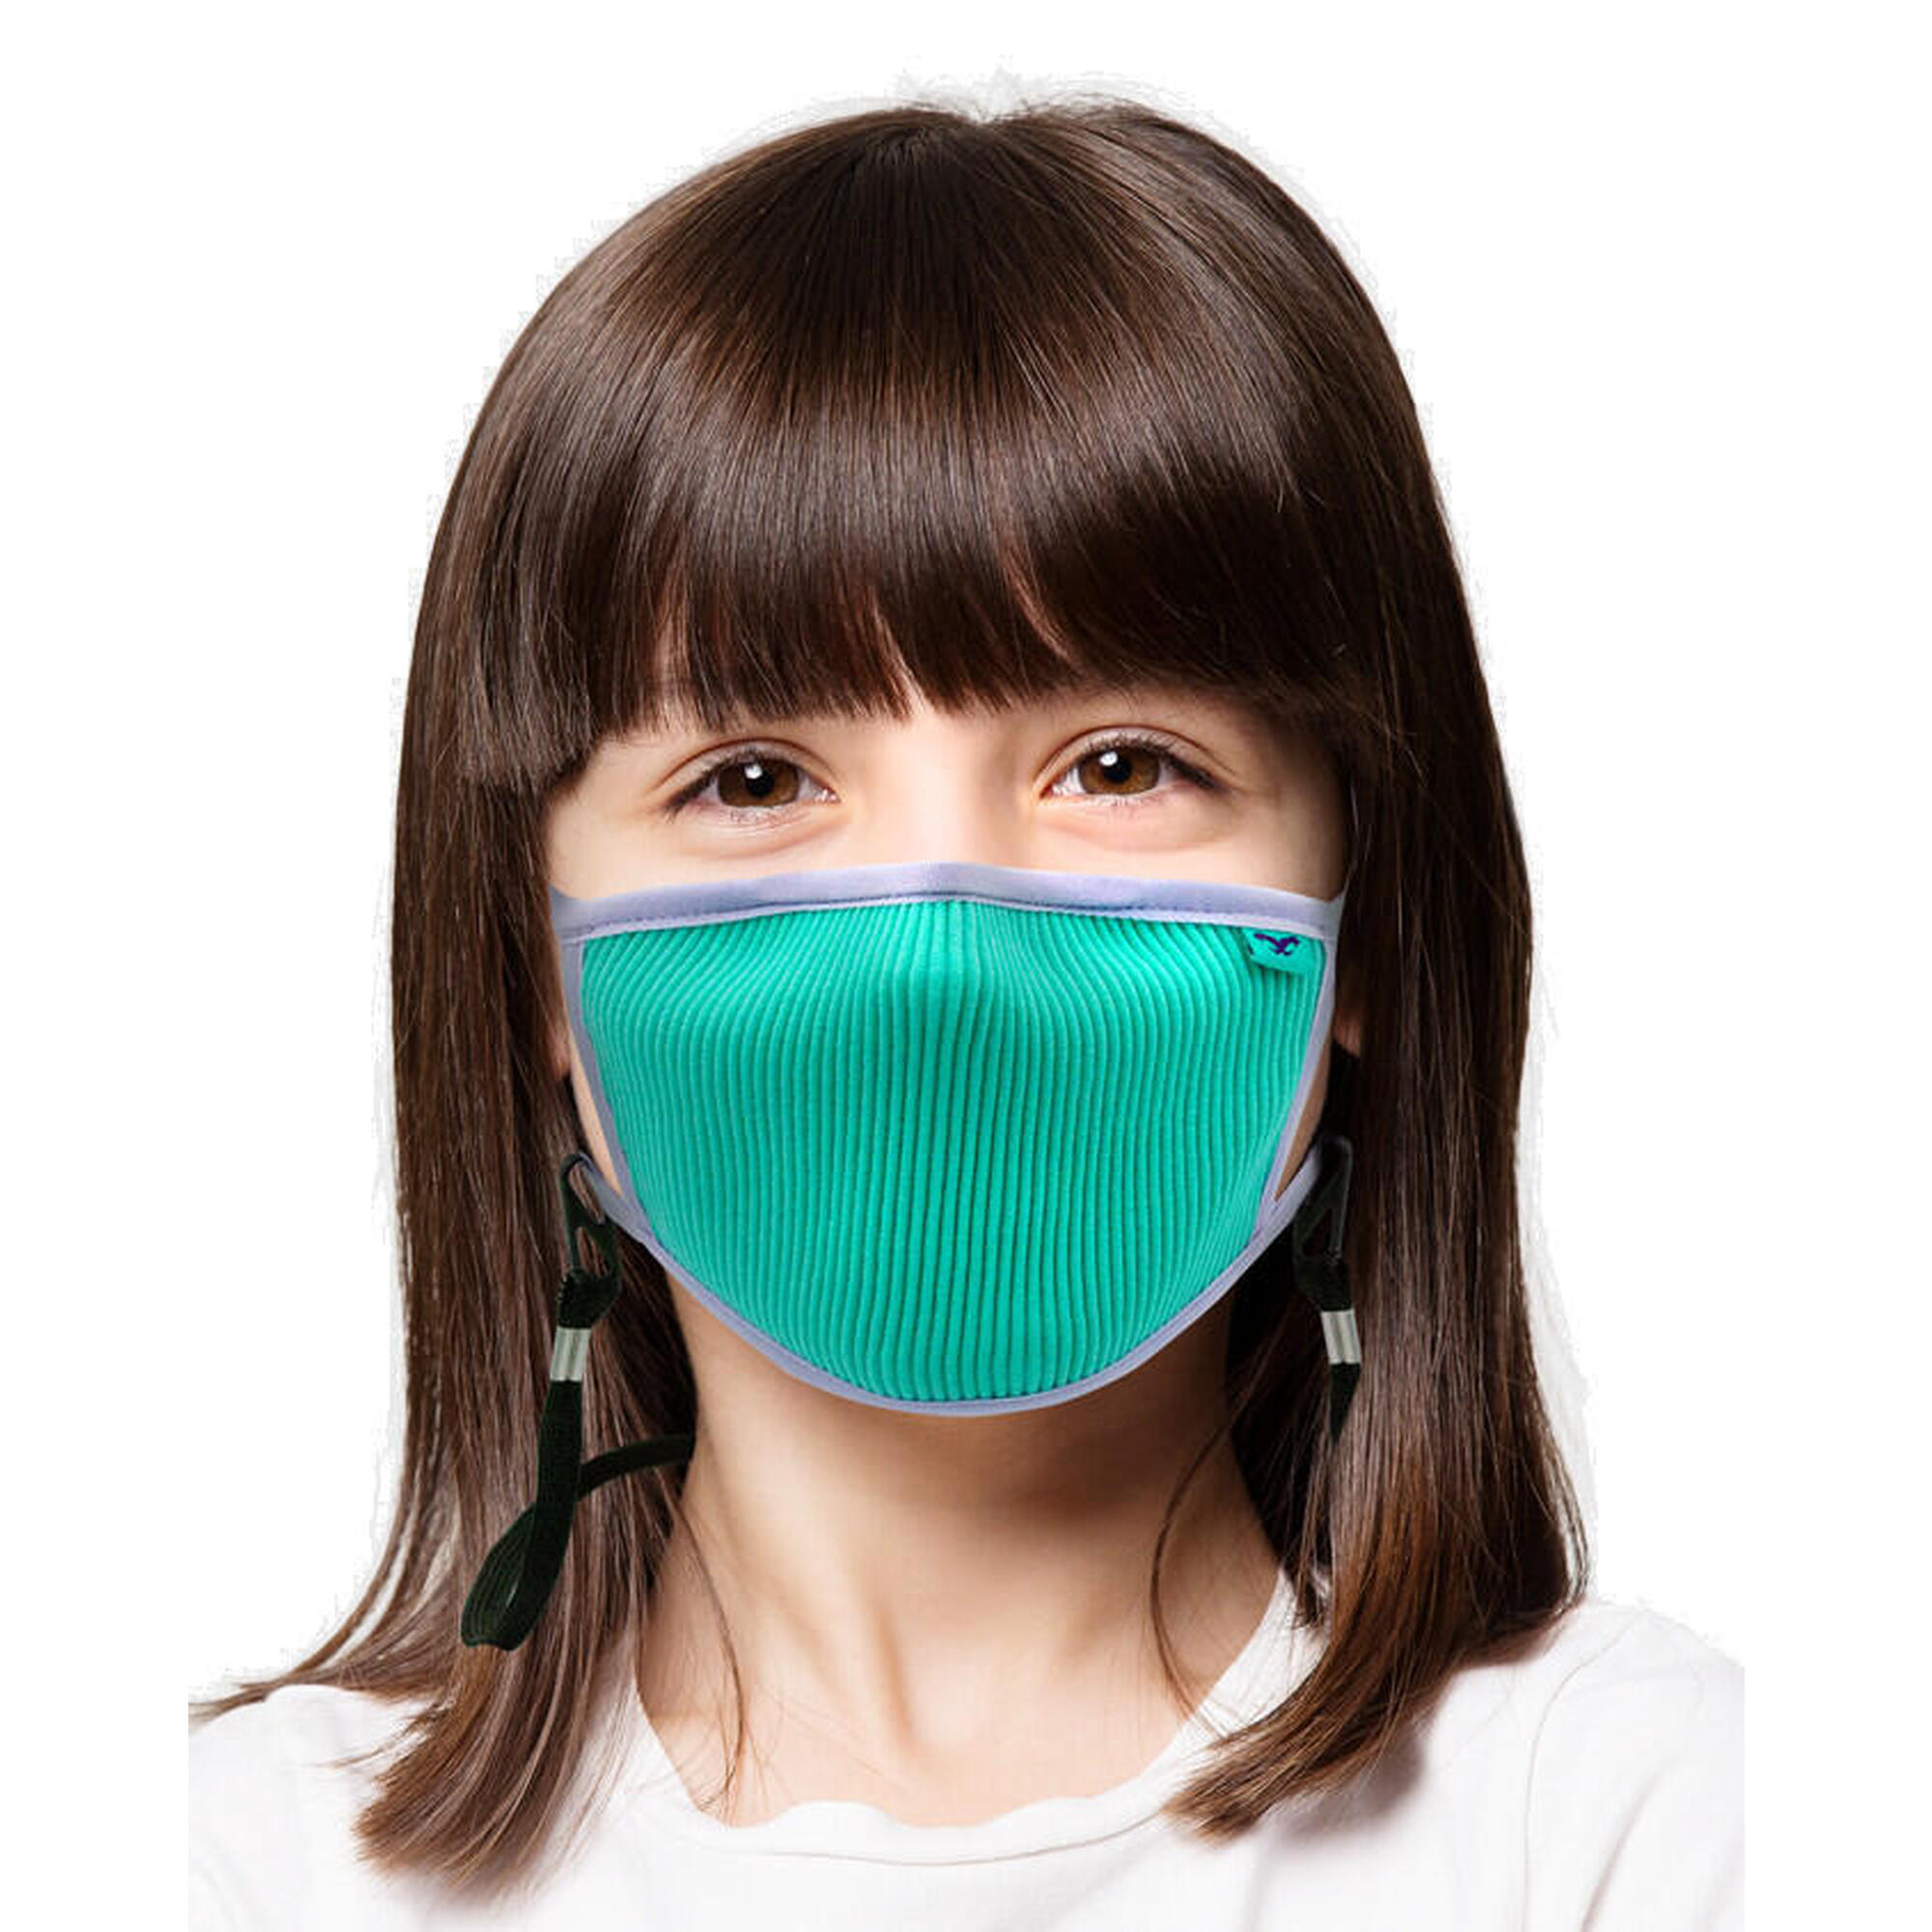 Masca sportiva pentru copii FU+ cu filtrare particule XS Turcoaz